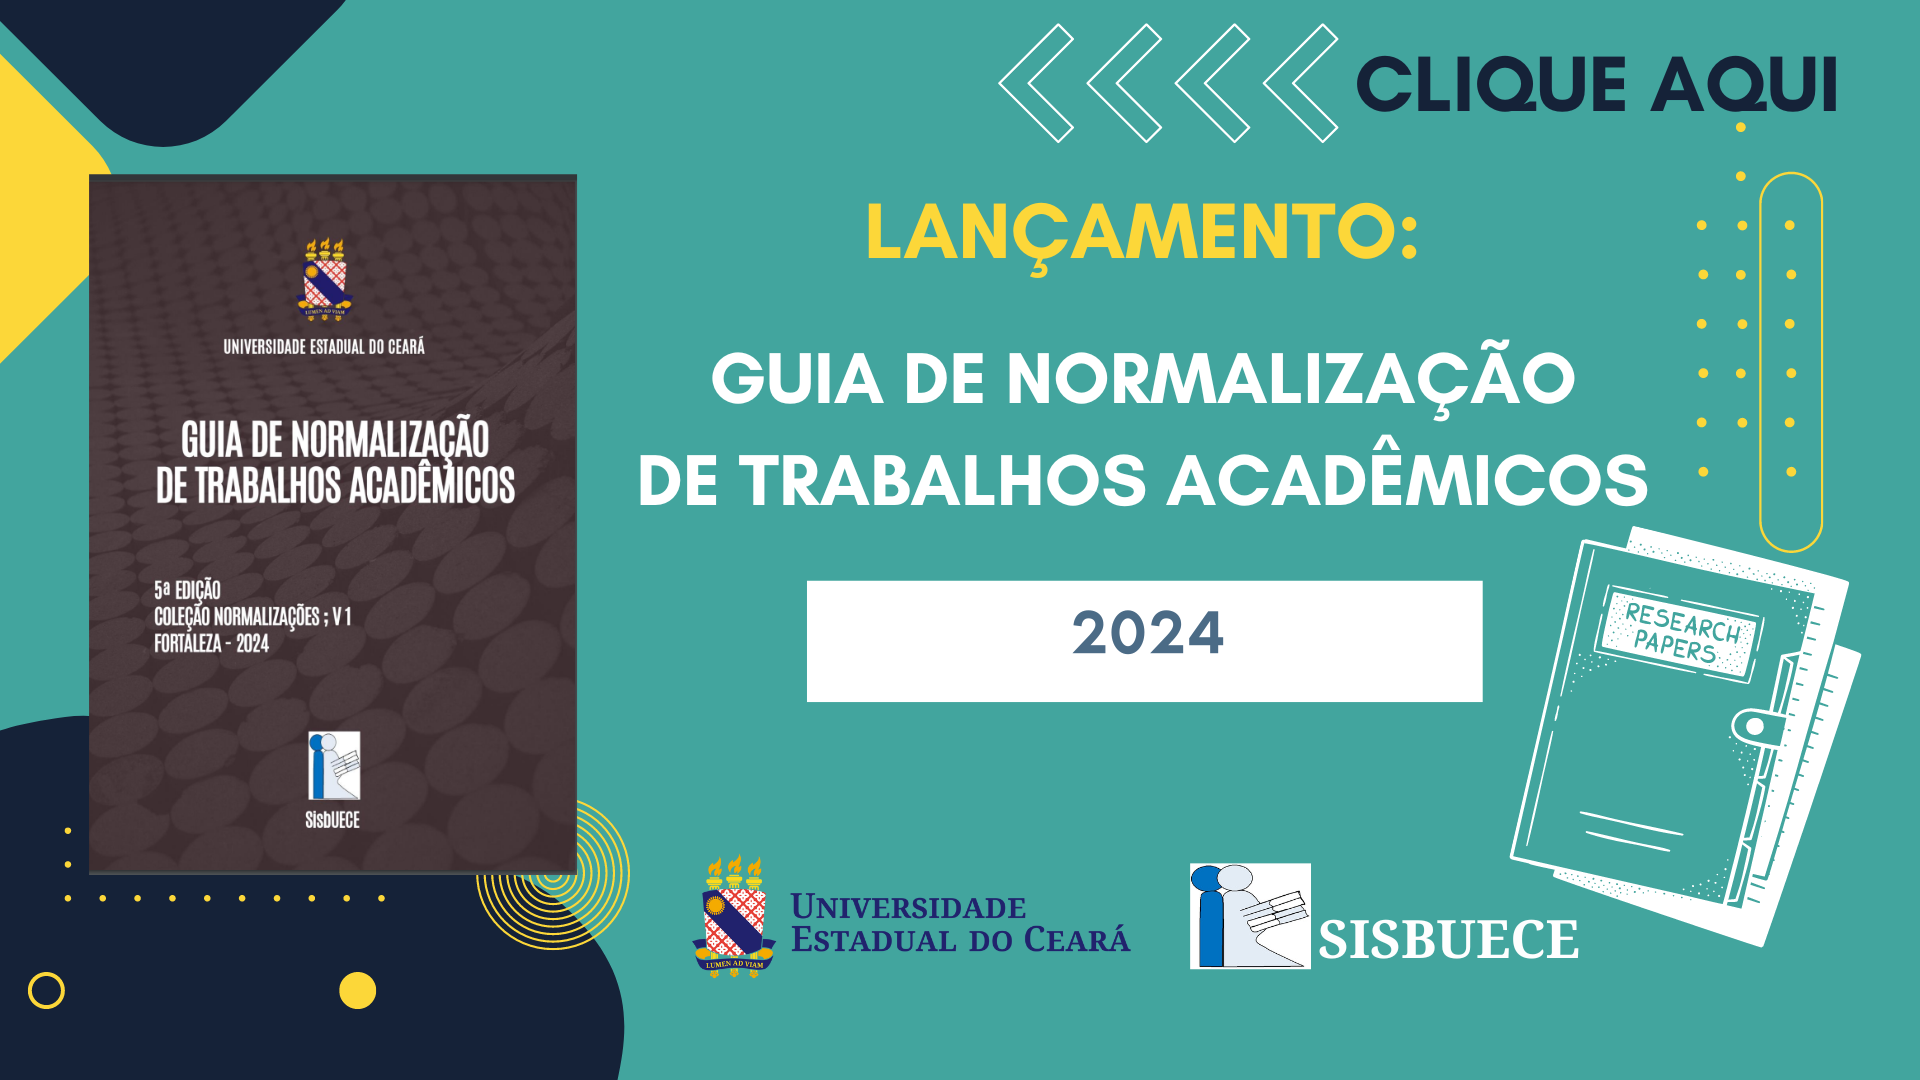 GUIA DE NORMALIZAÇÃO DA UECE 2024